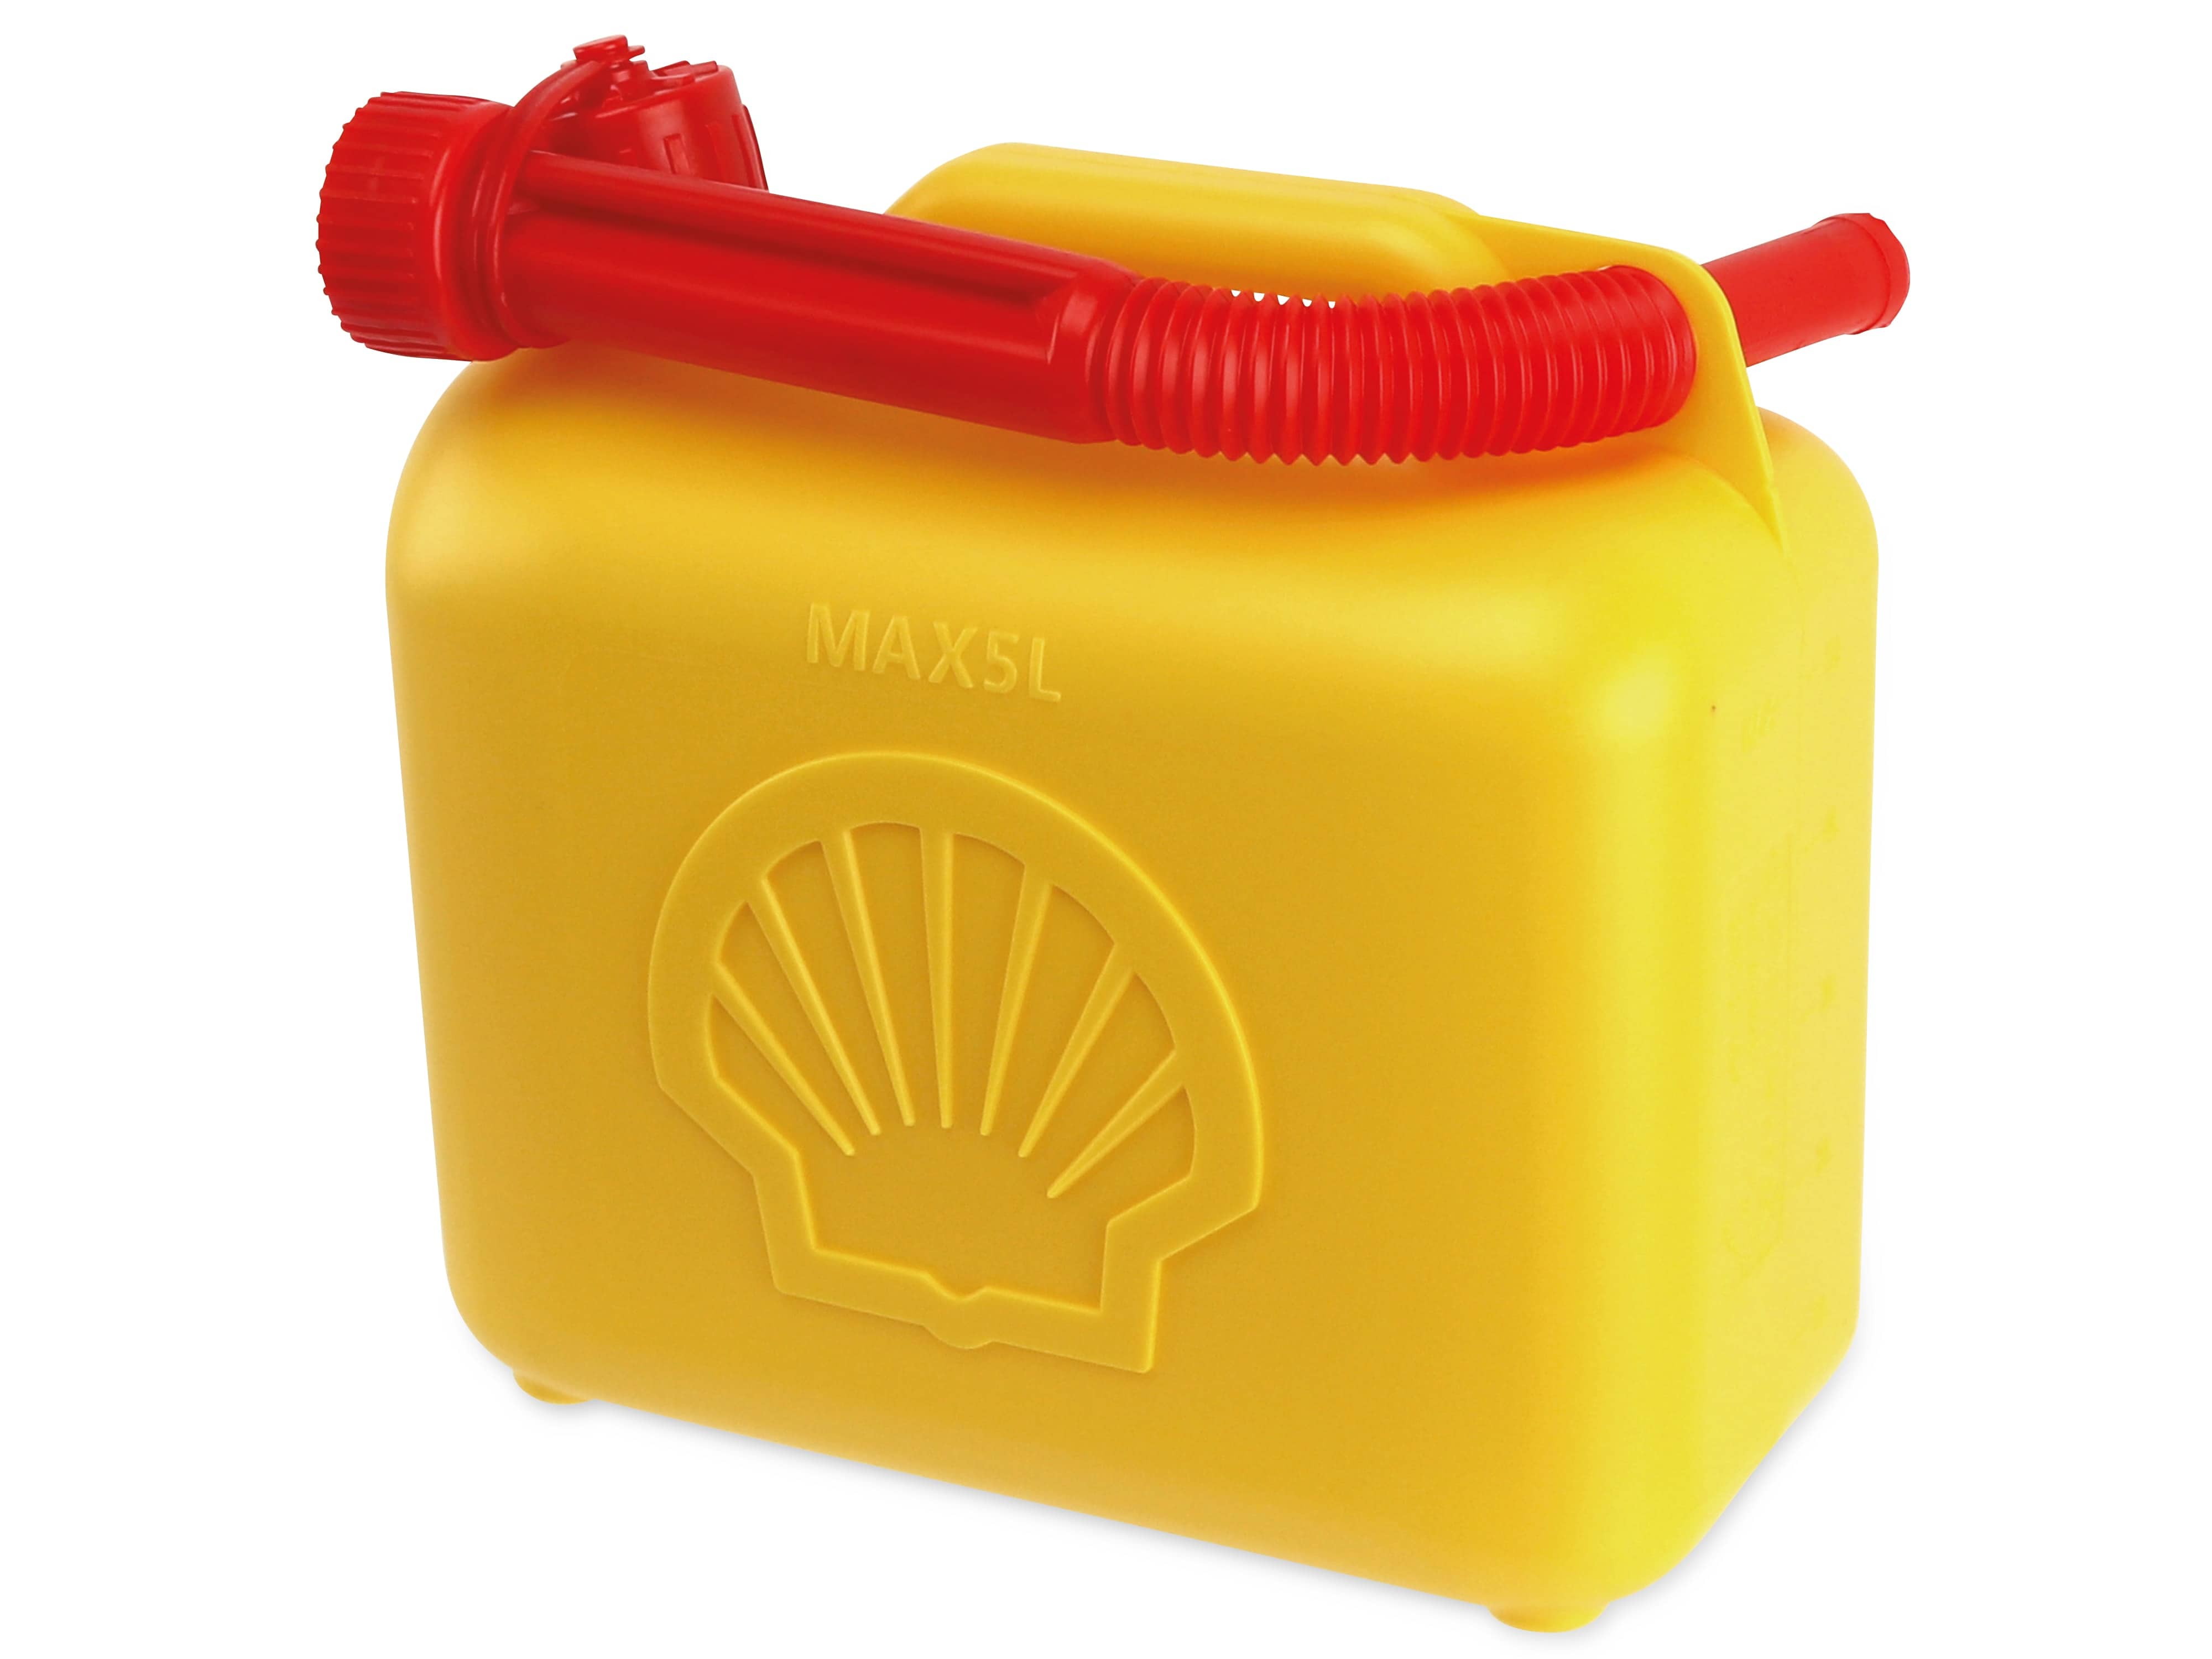 SHELL Benzinkanister, 5 L, gelb